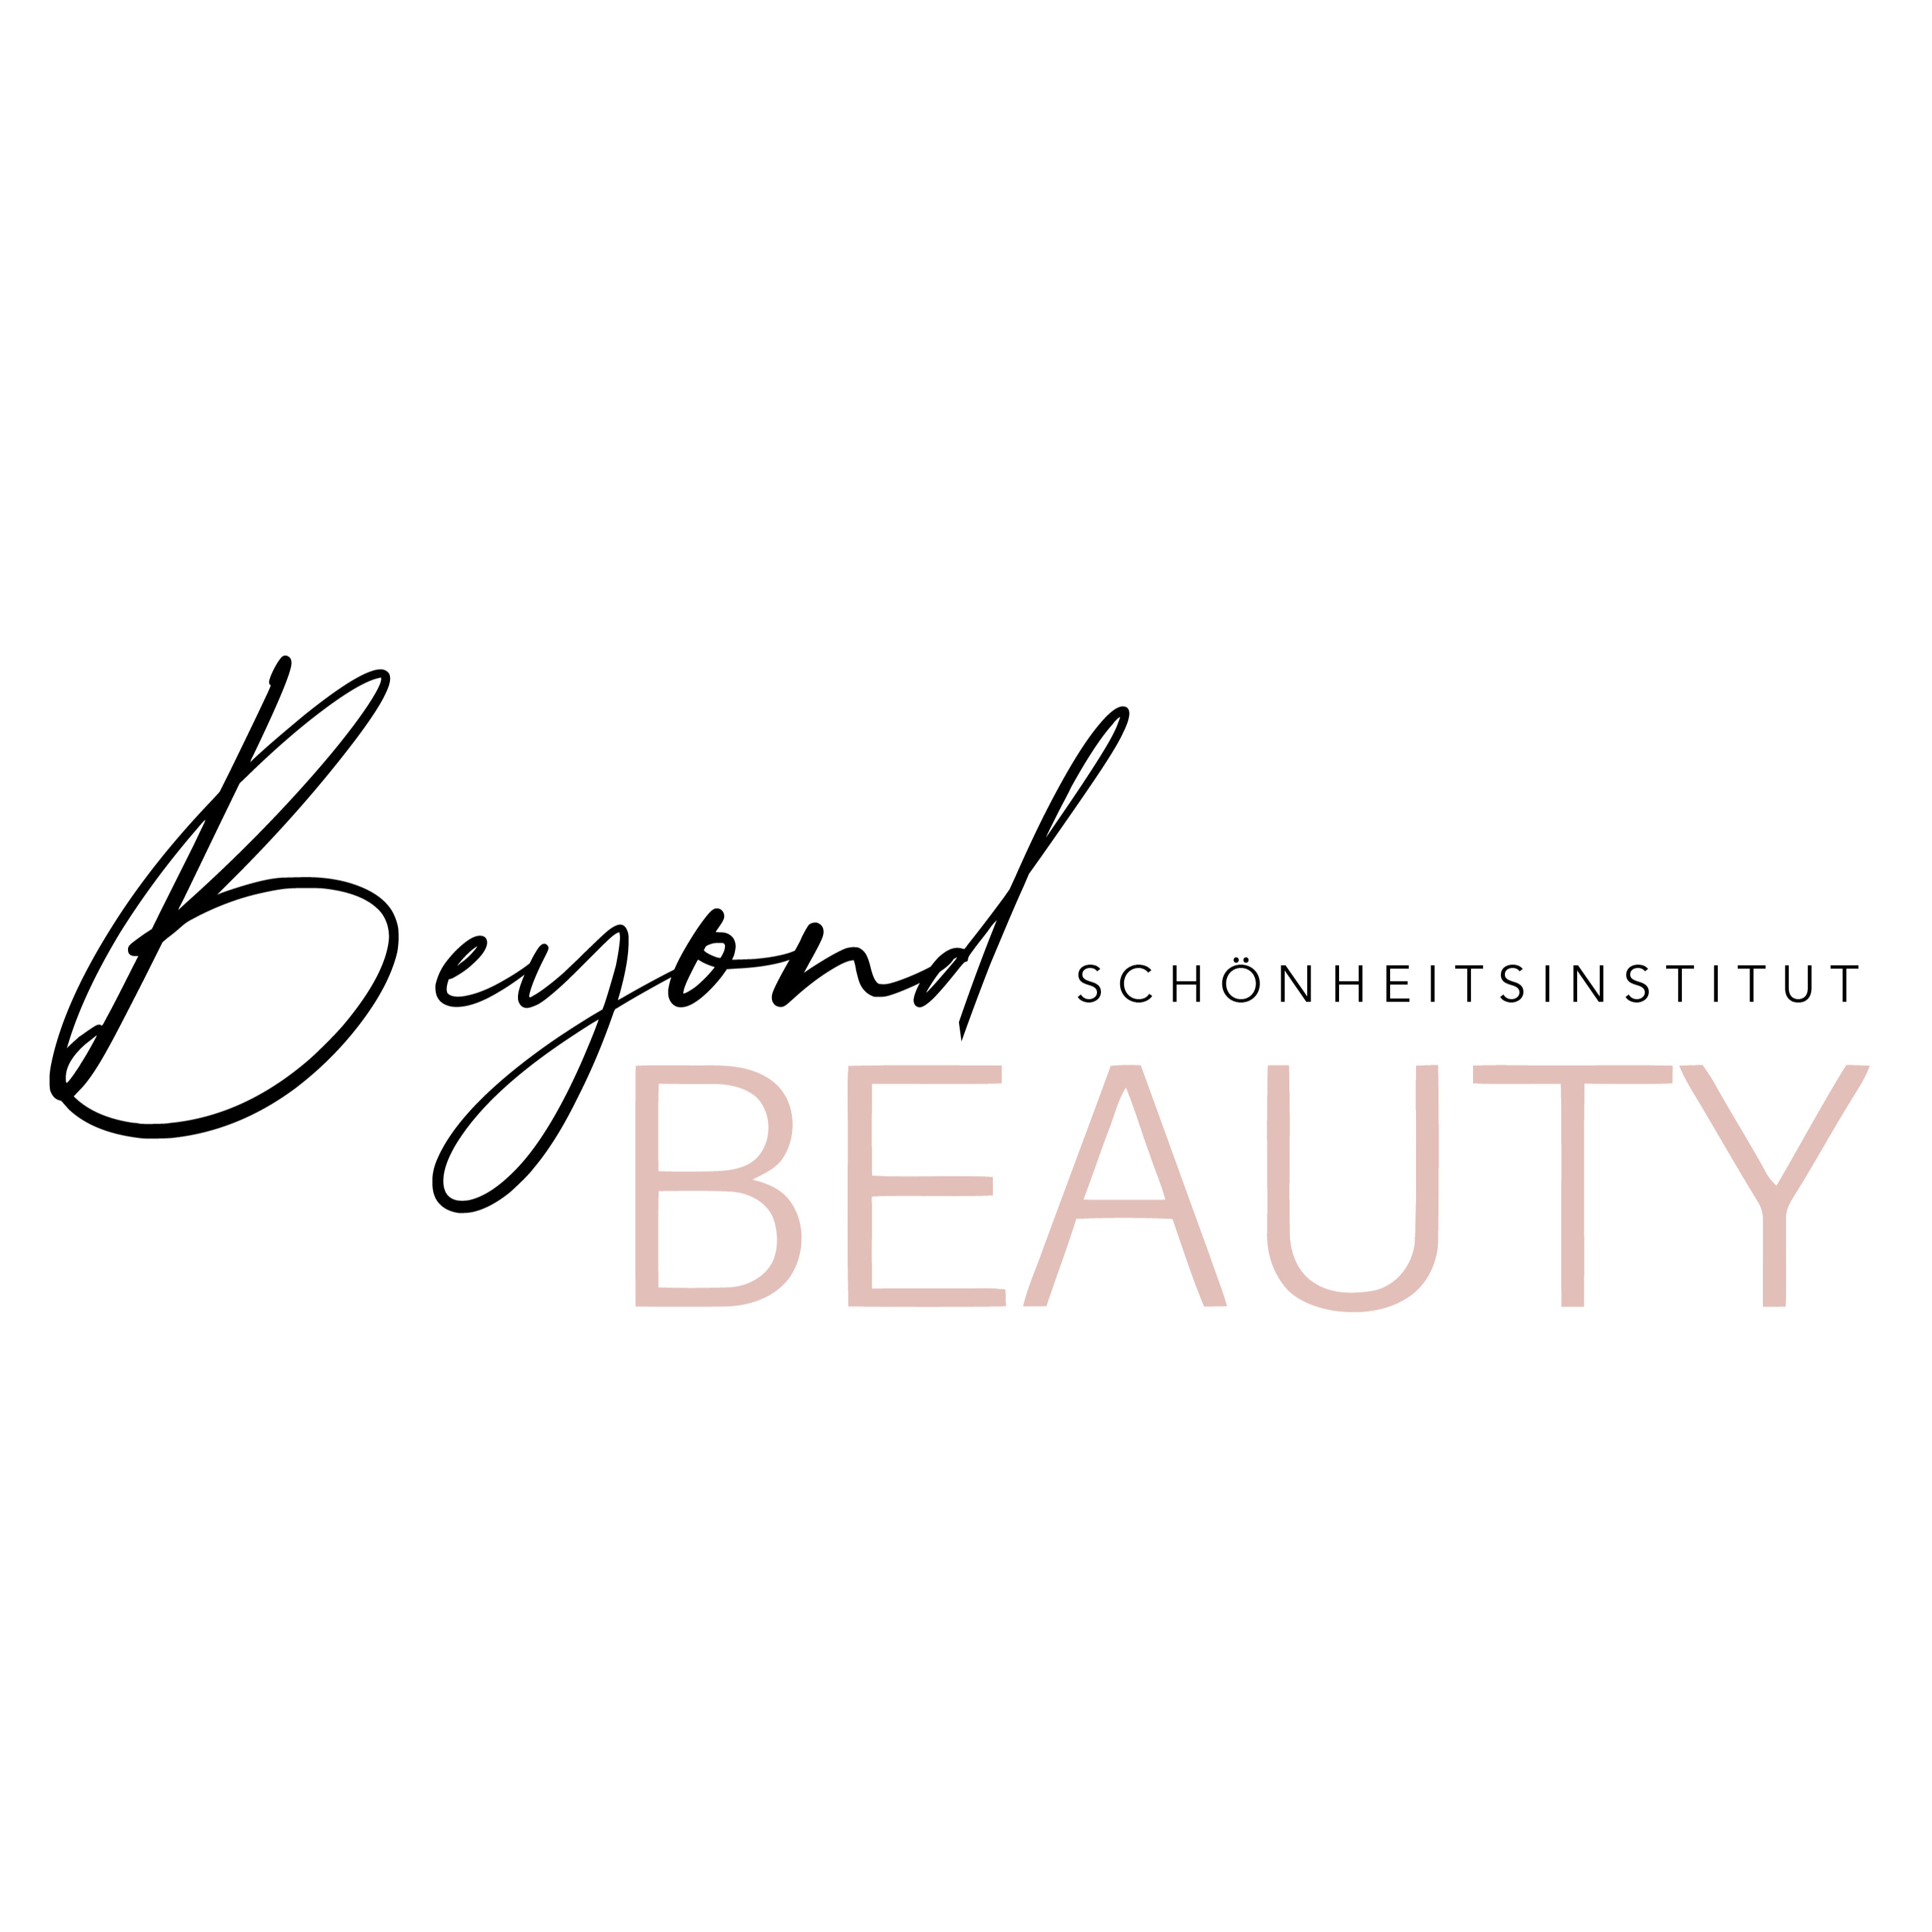 Beyond Beauty - Schönheitsinstitut in Frankfurt am Main - Logo